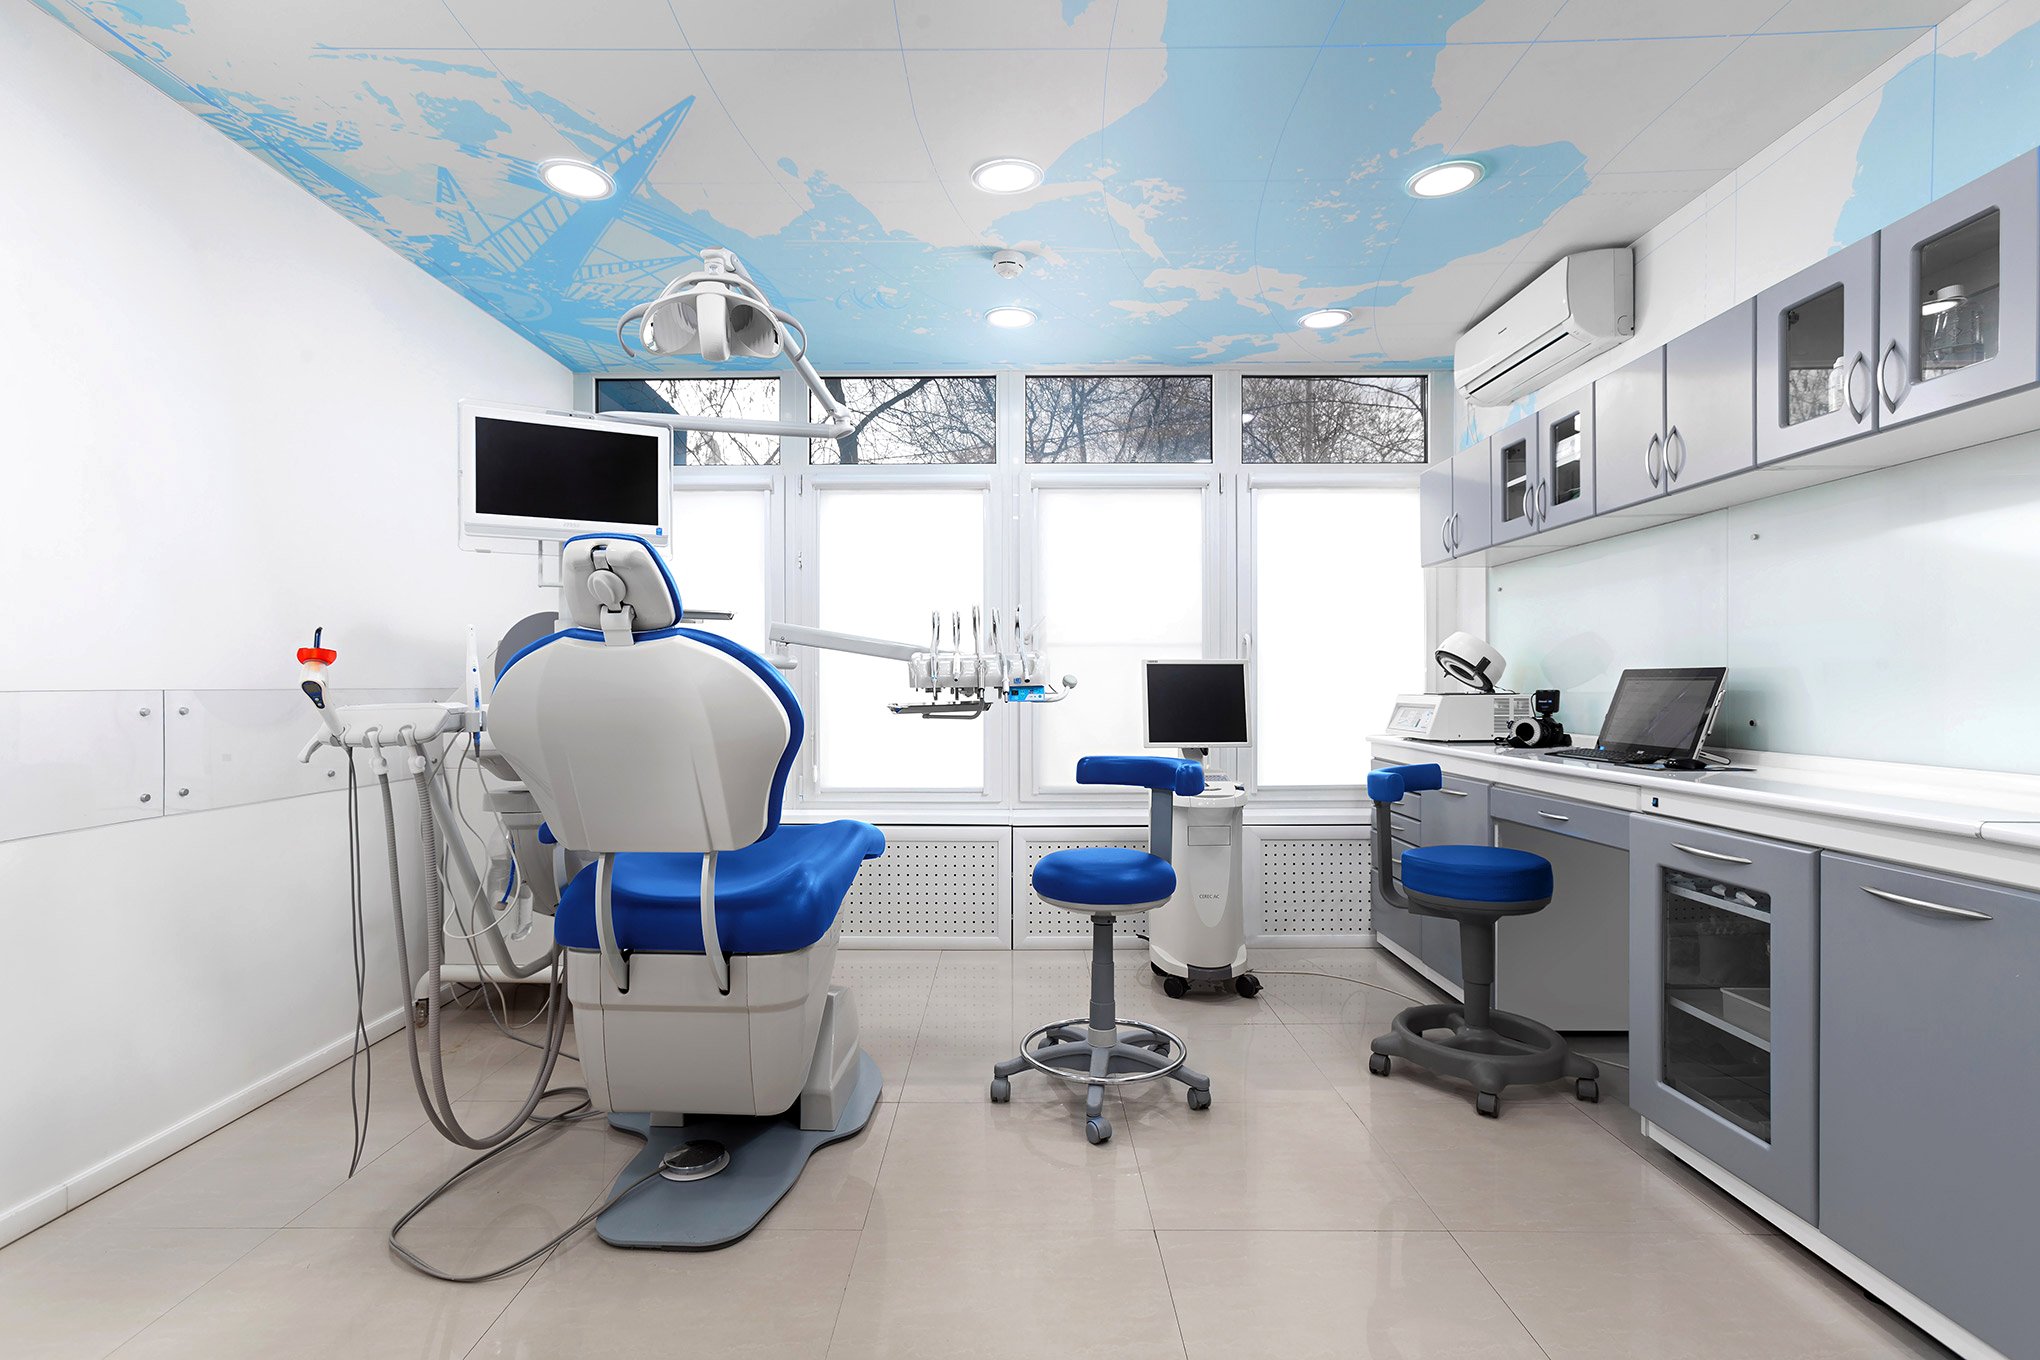 Медцентр труда. Стоматологический кабинет. Стоматология кабинет. Стоматологическа клиника. Оснащение стоматологического кабинета.